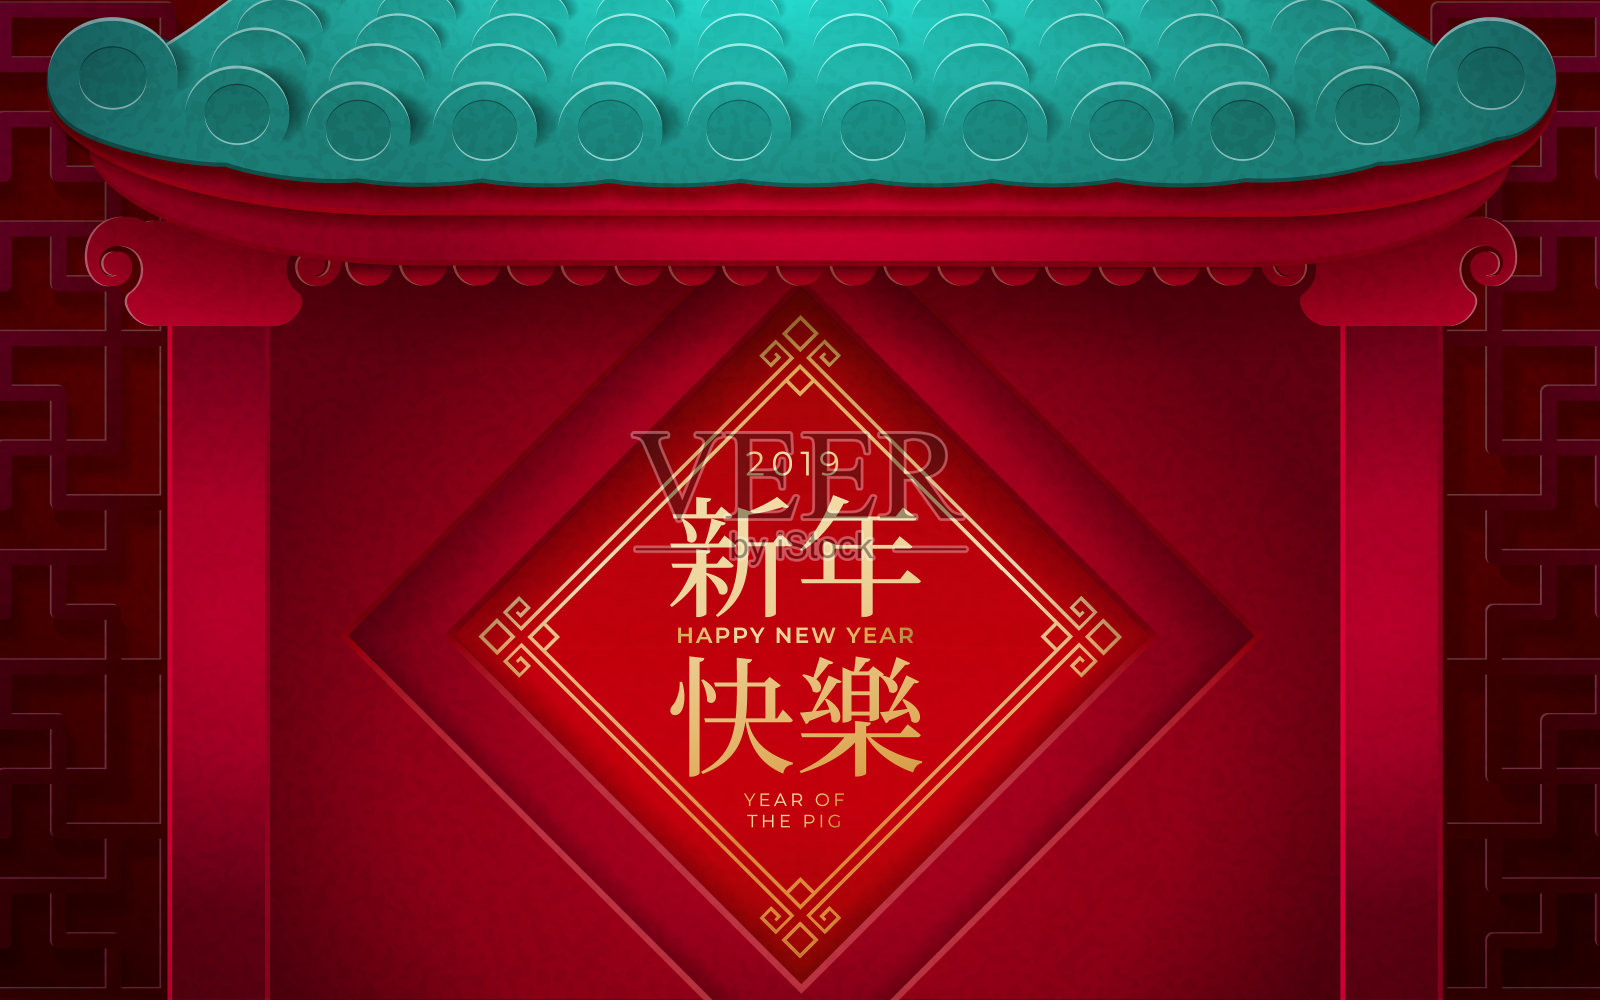 2019年中国贺年卡设计与大门设计模板素材